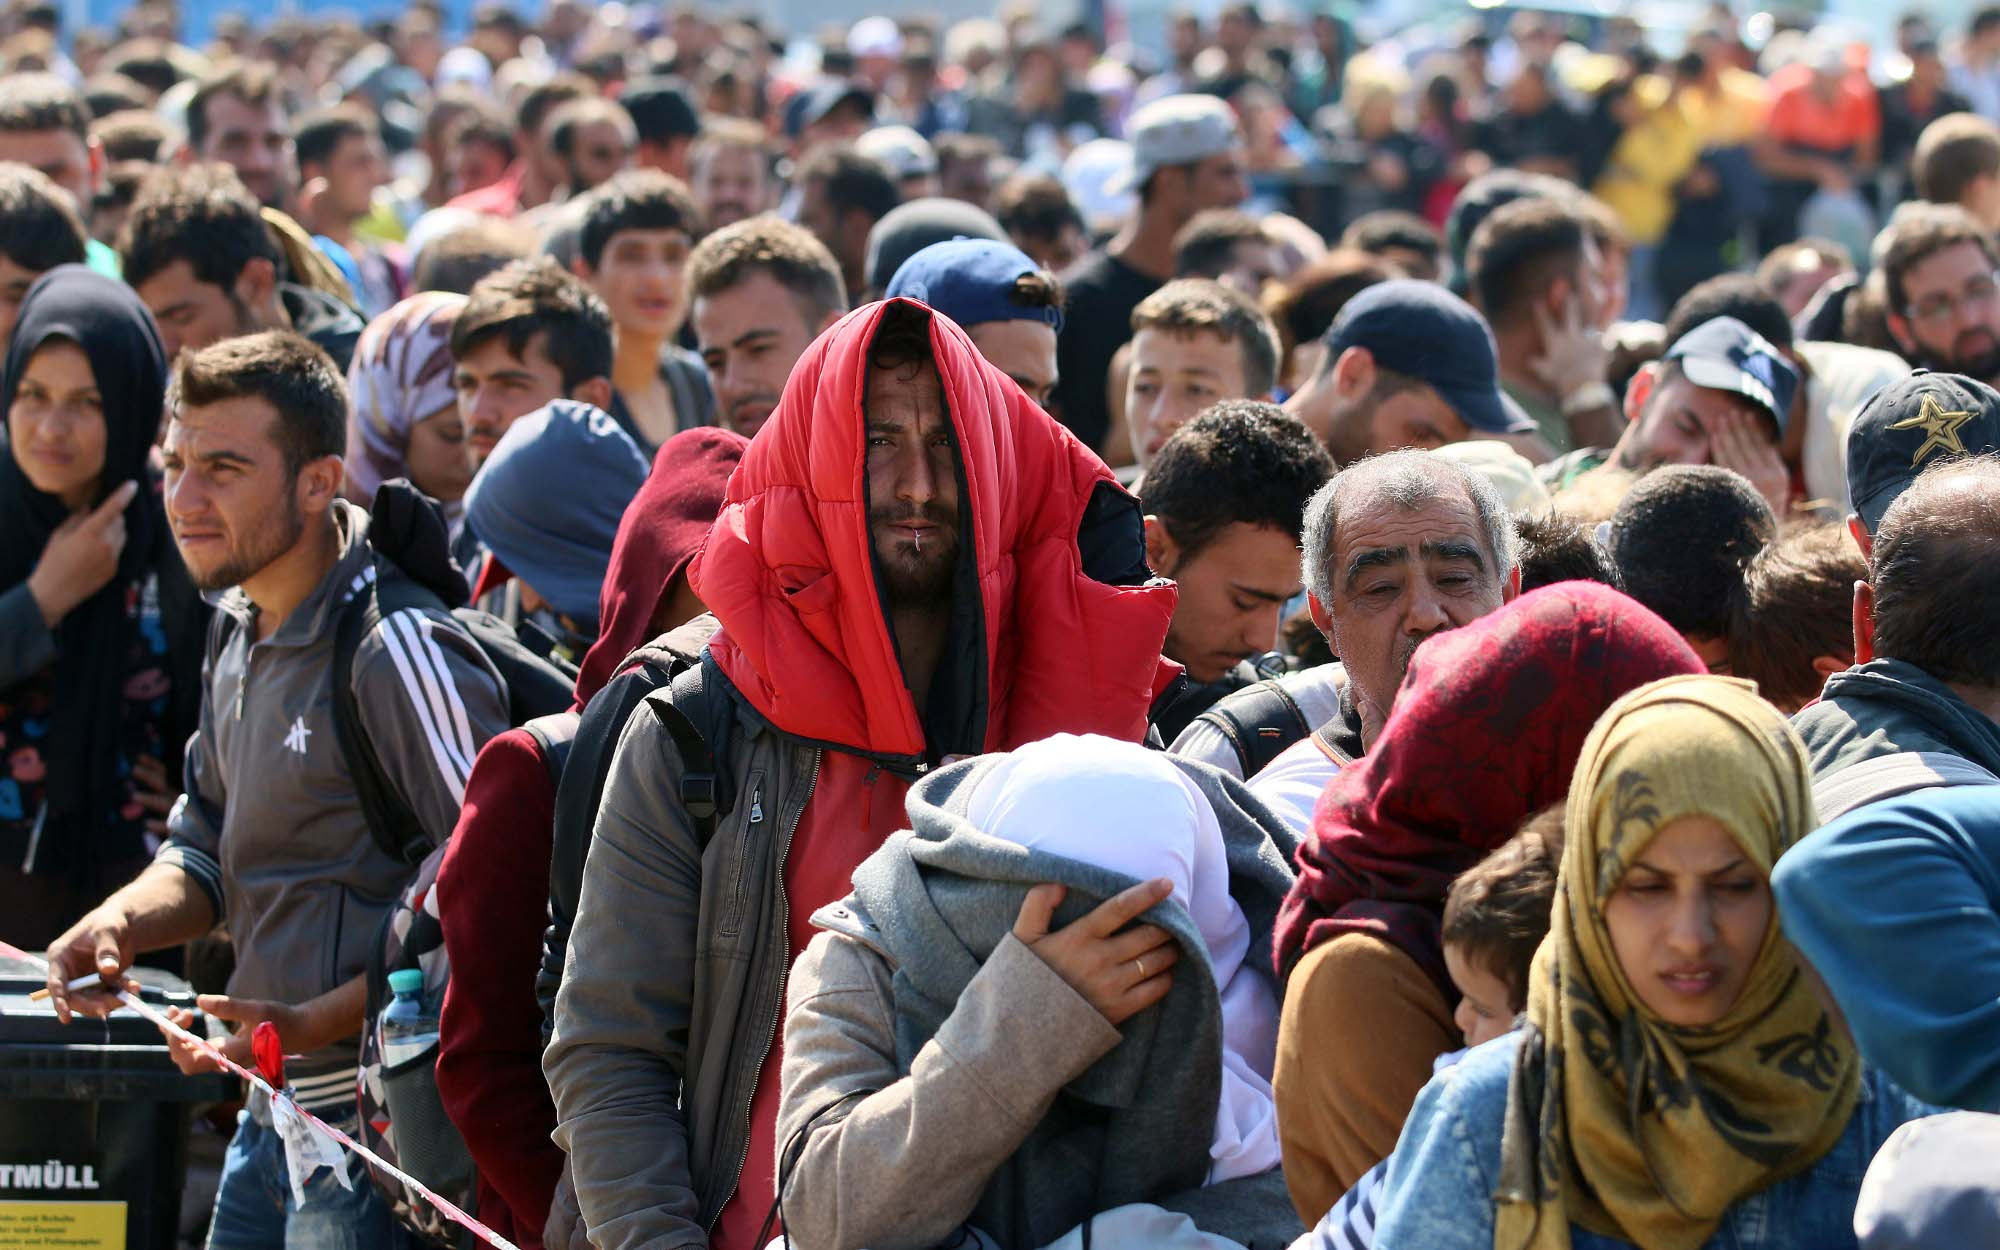 Δραματική αύξηση των μεταναστευτικών ροών στη Λέσβο το τελευταίο 20ήμερο